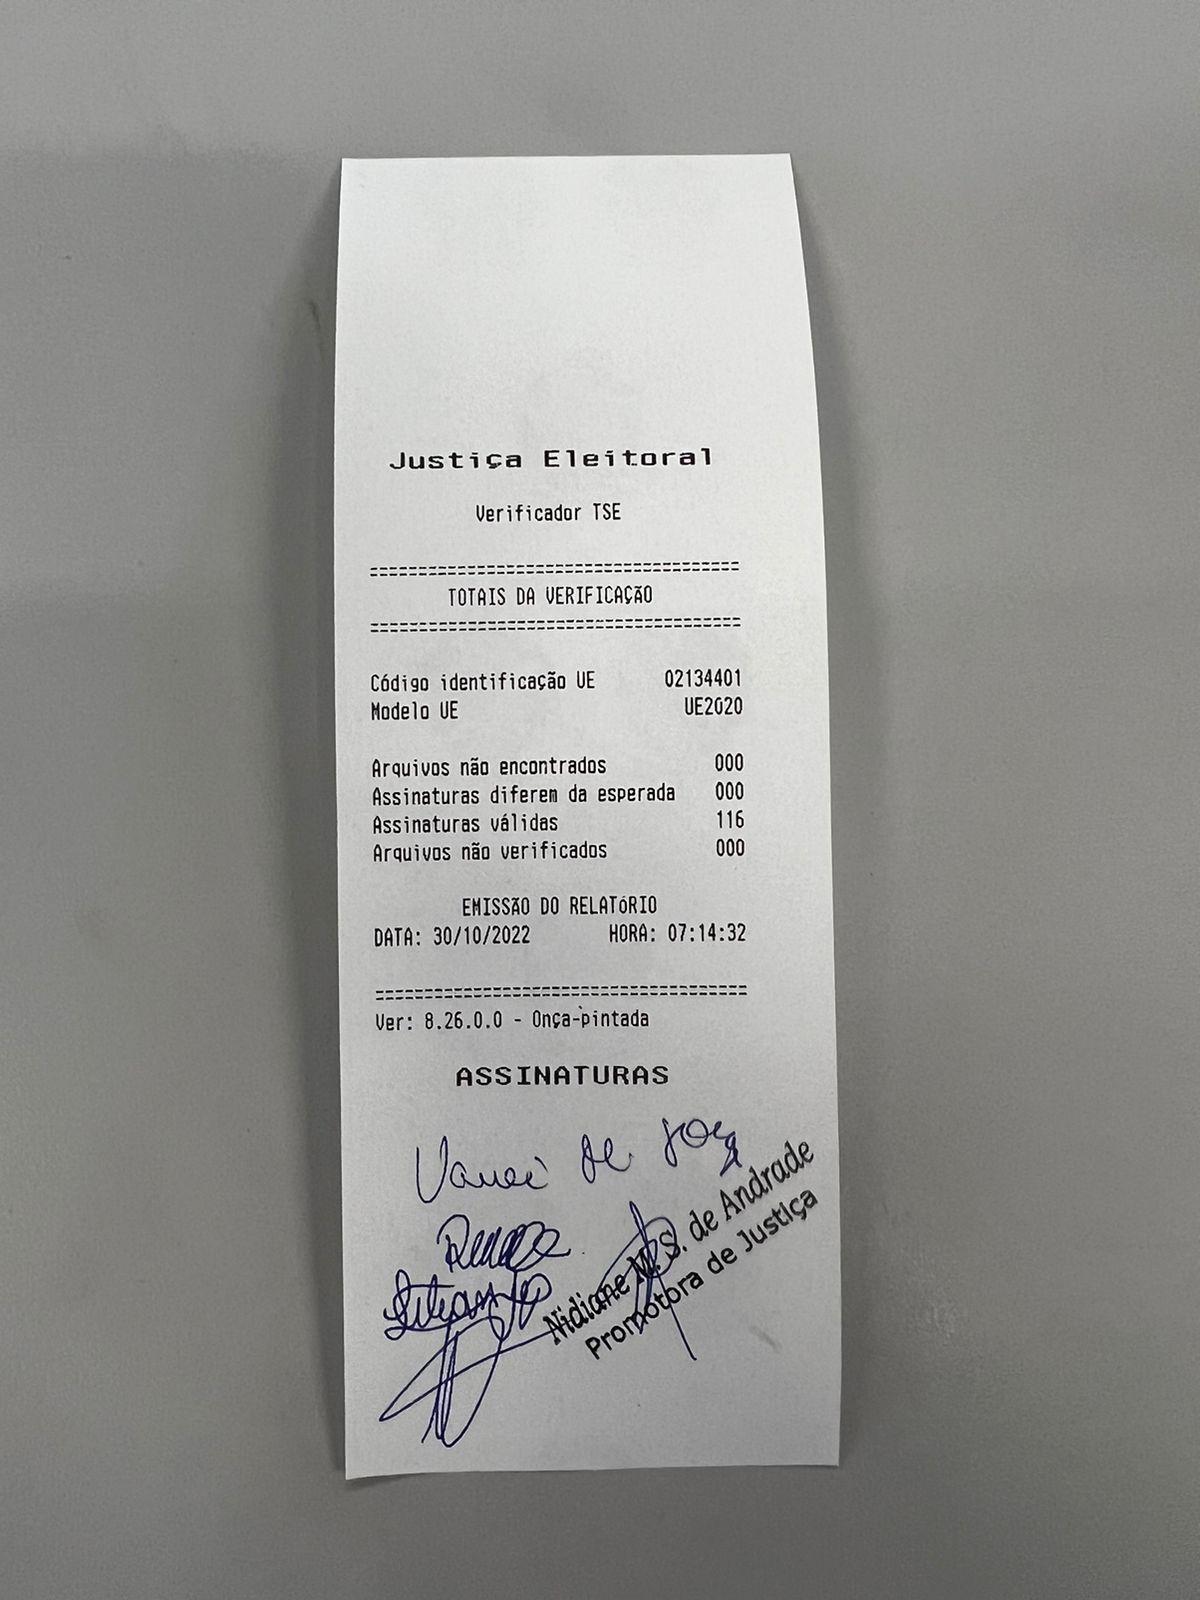 Documento emitido na urna eletrônica que passou pelo teste de autenticidade permite início da votação (Pedro Melo / Hoje em Dia)